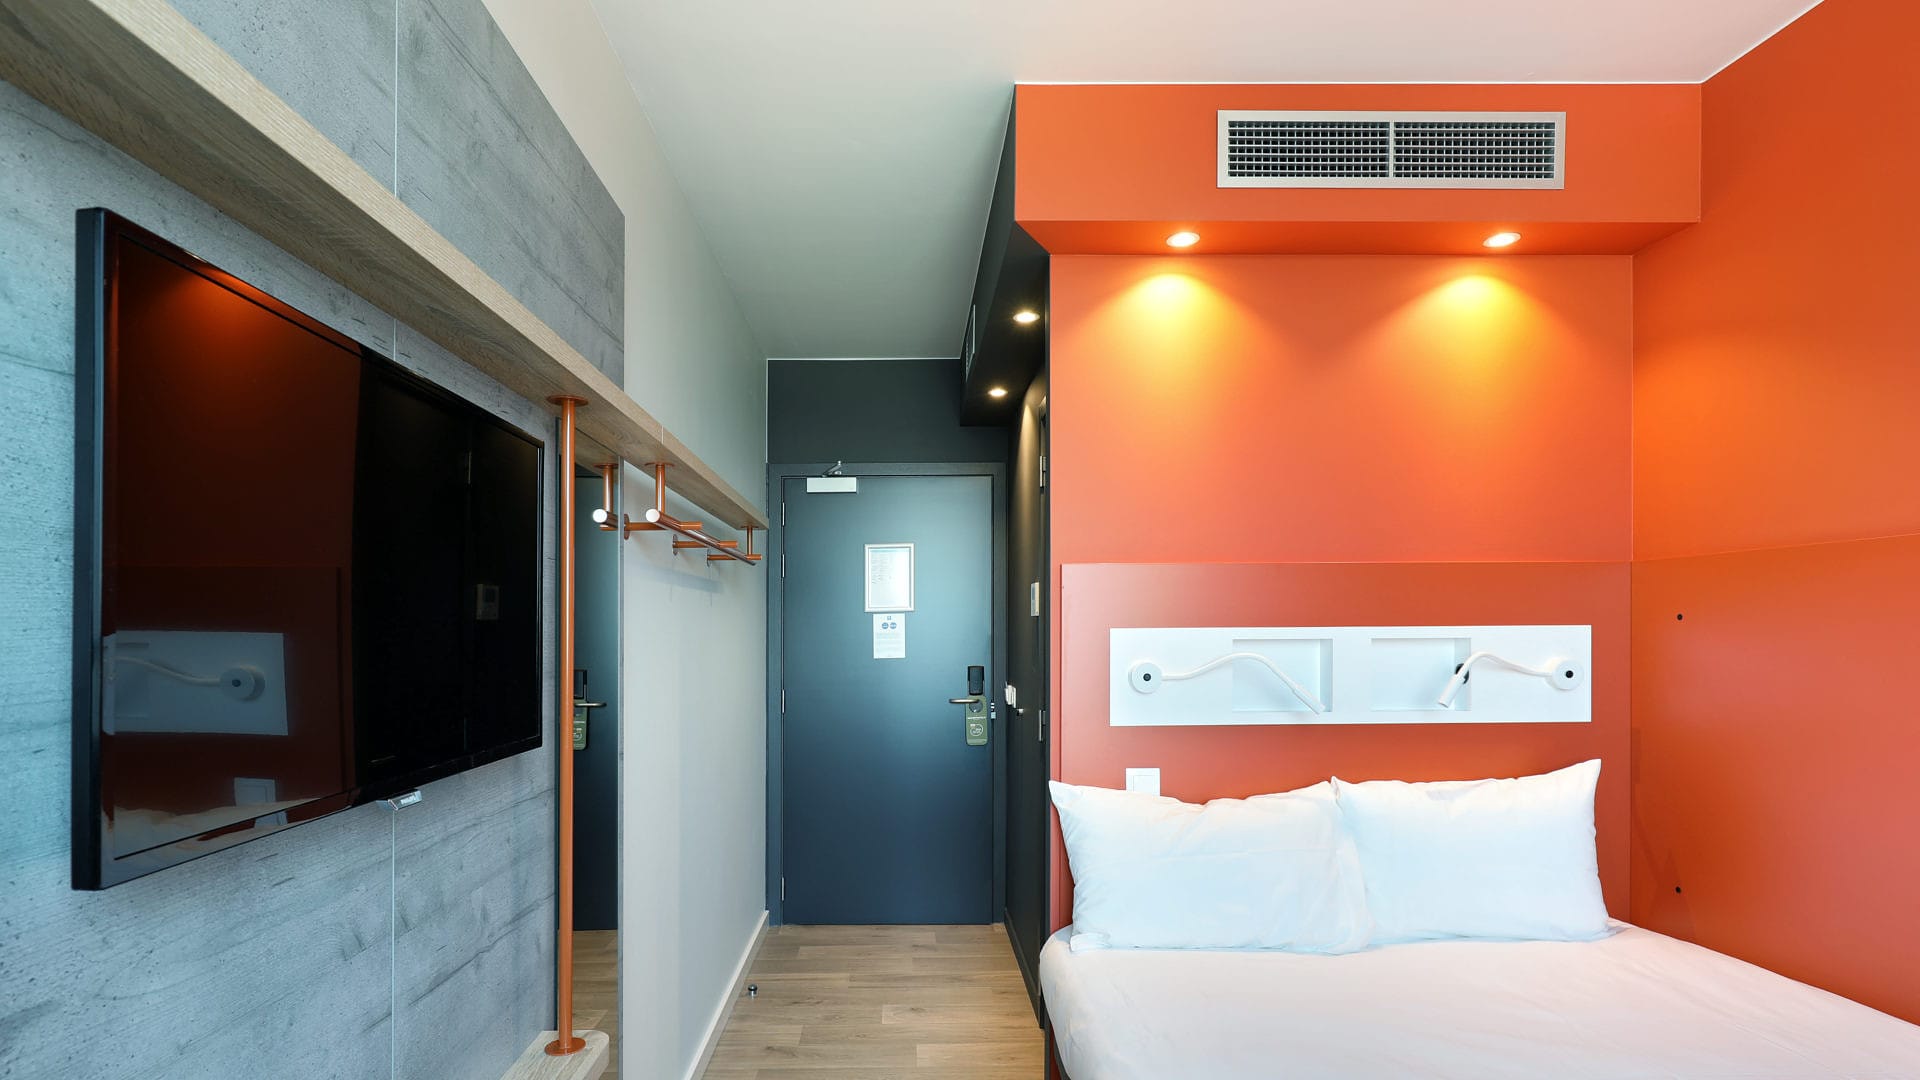 Interieur Ibis hotel Gent - realisatie Wyckaert